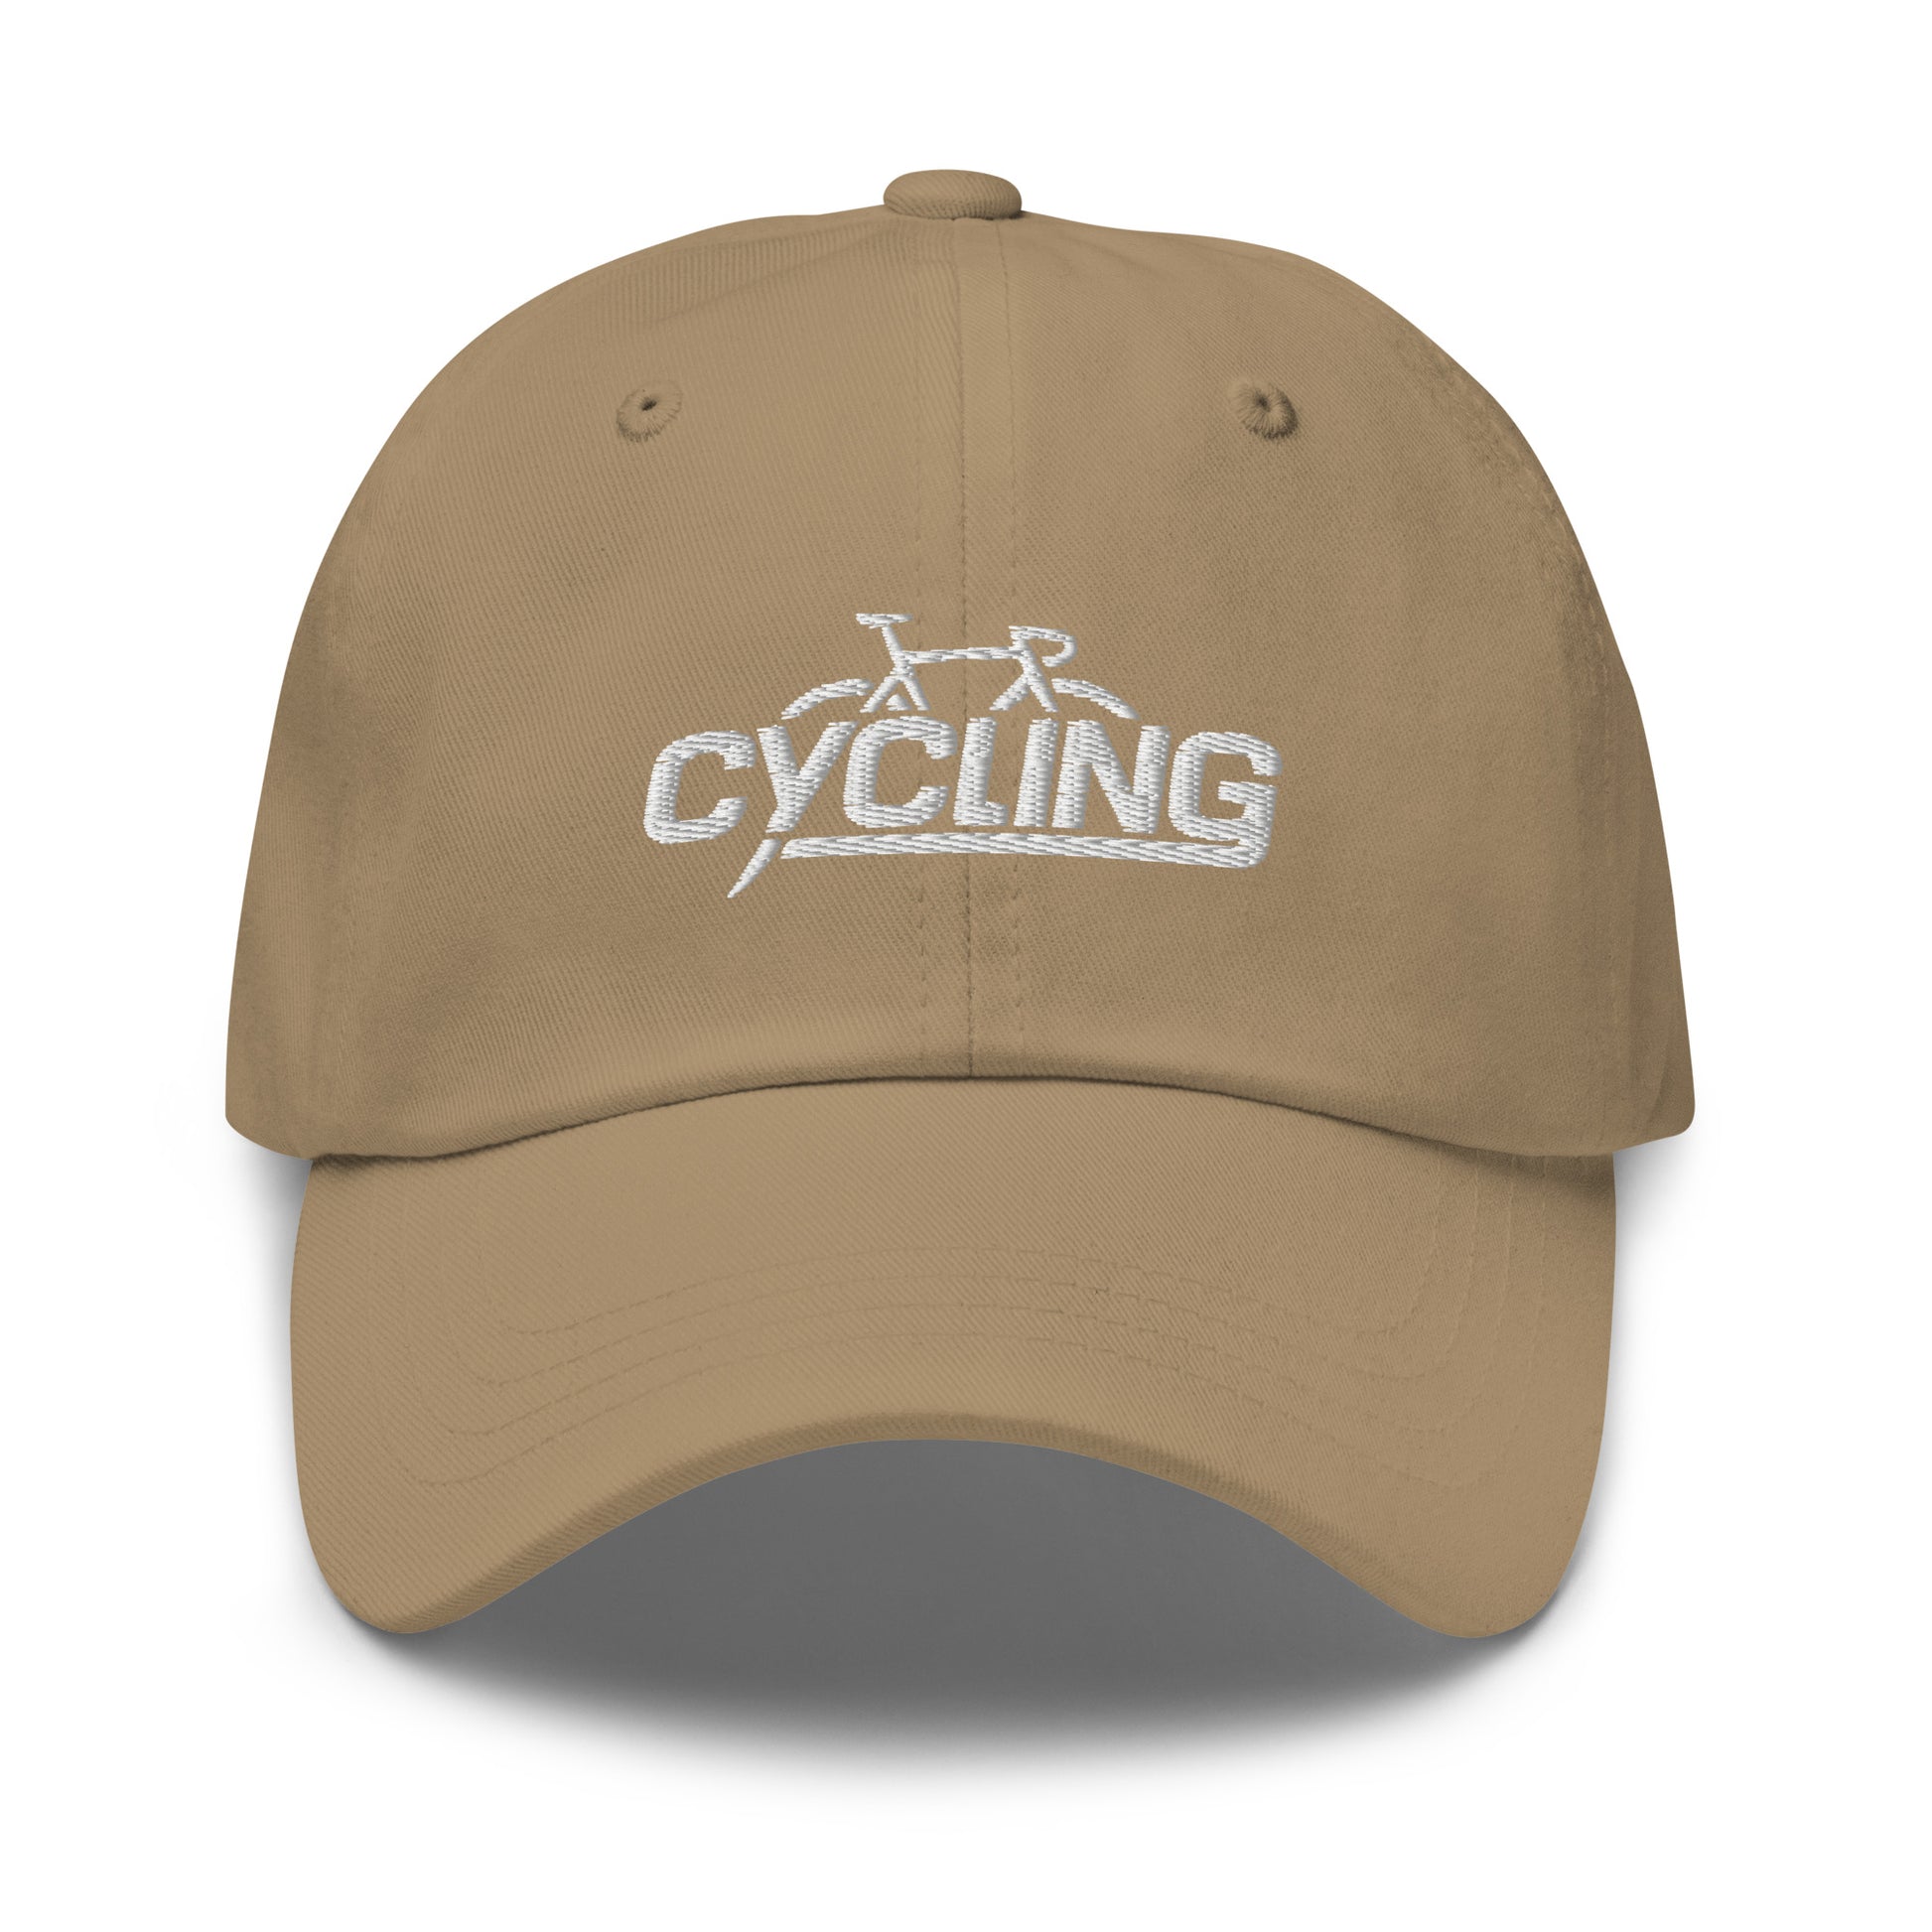 Cycling hat, Bicycle hat, bike hat, cycle hat khaki